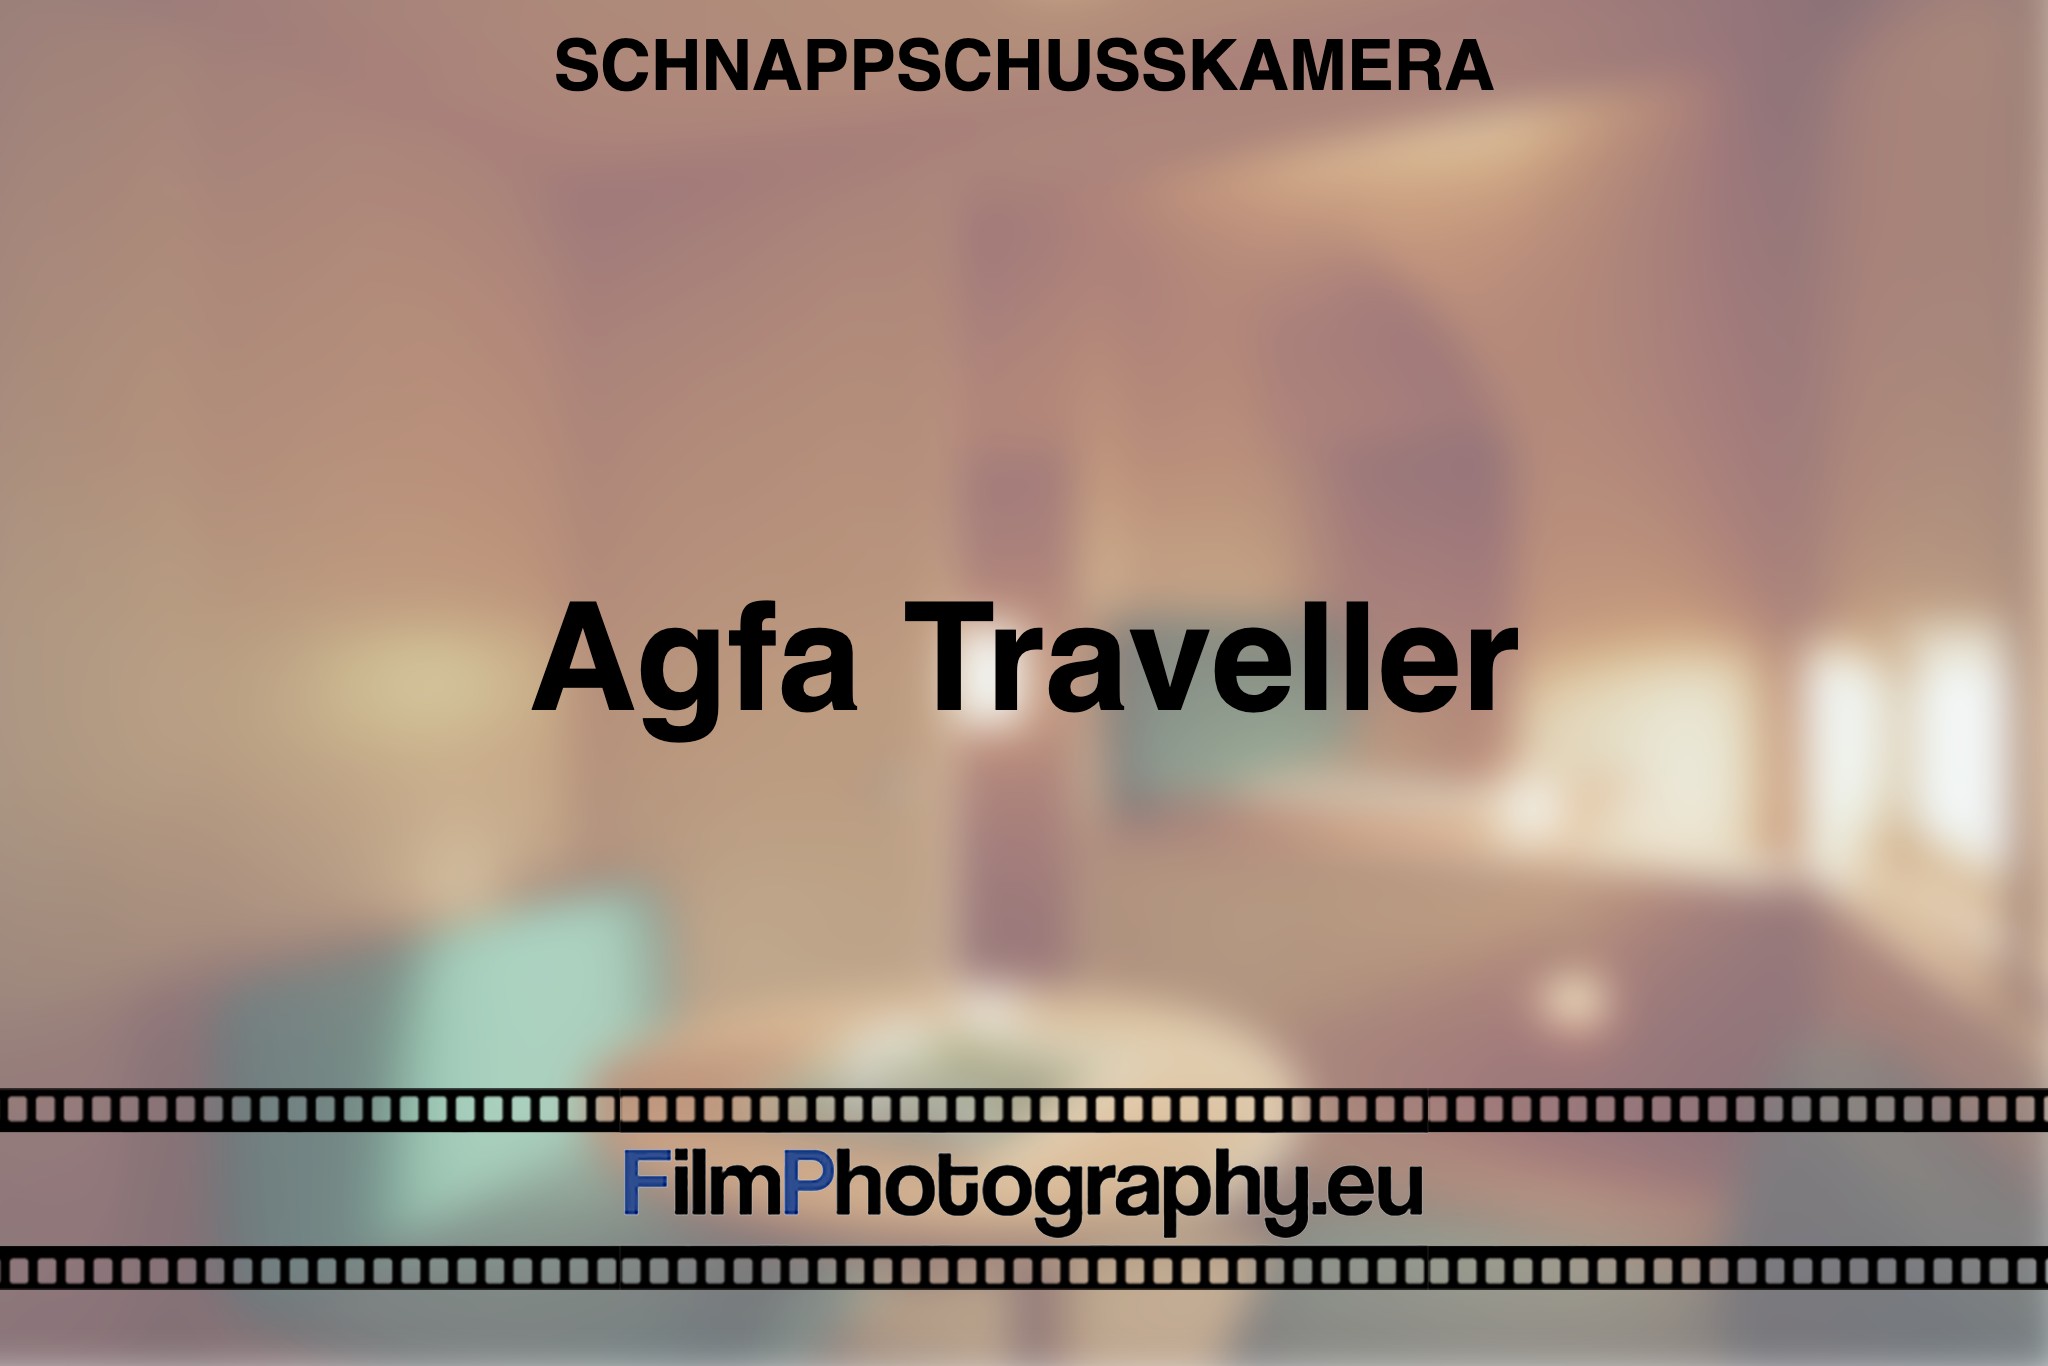 agfa-traveller-schnappschusskamera-bnv